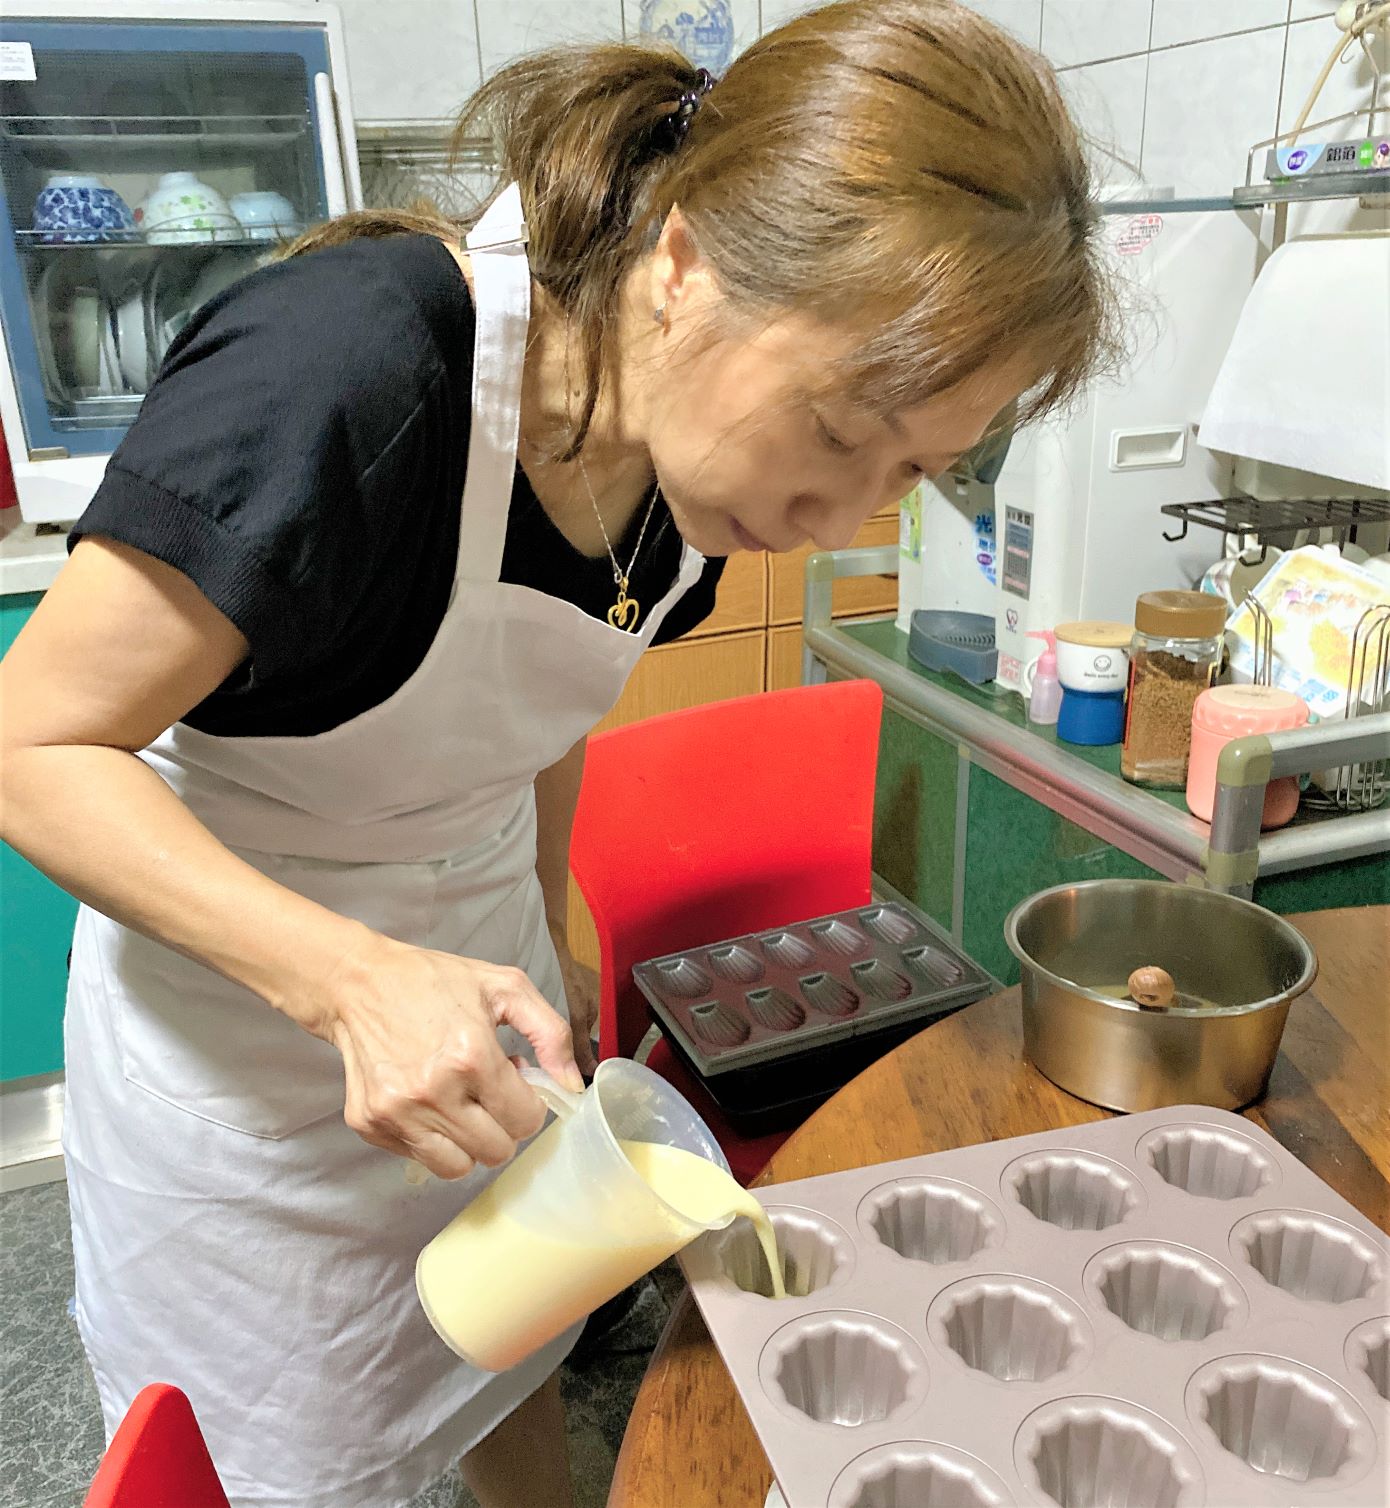 勞動部補助失(待)業民眾參加職業訓練 全職家庭主婦學習專業烘焙技能 成功創業